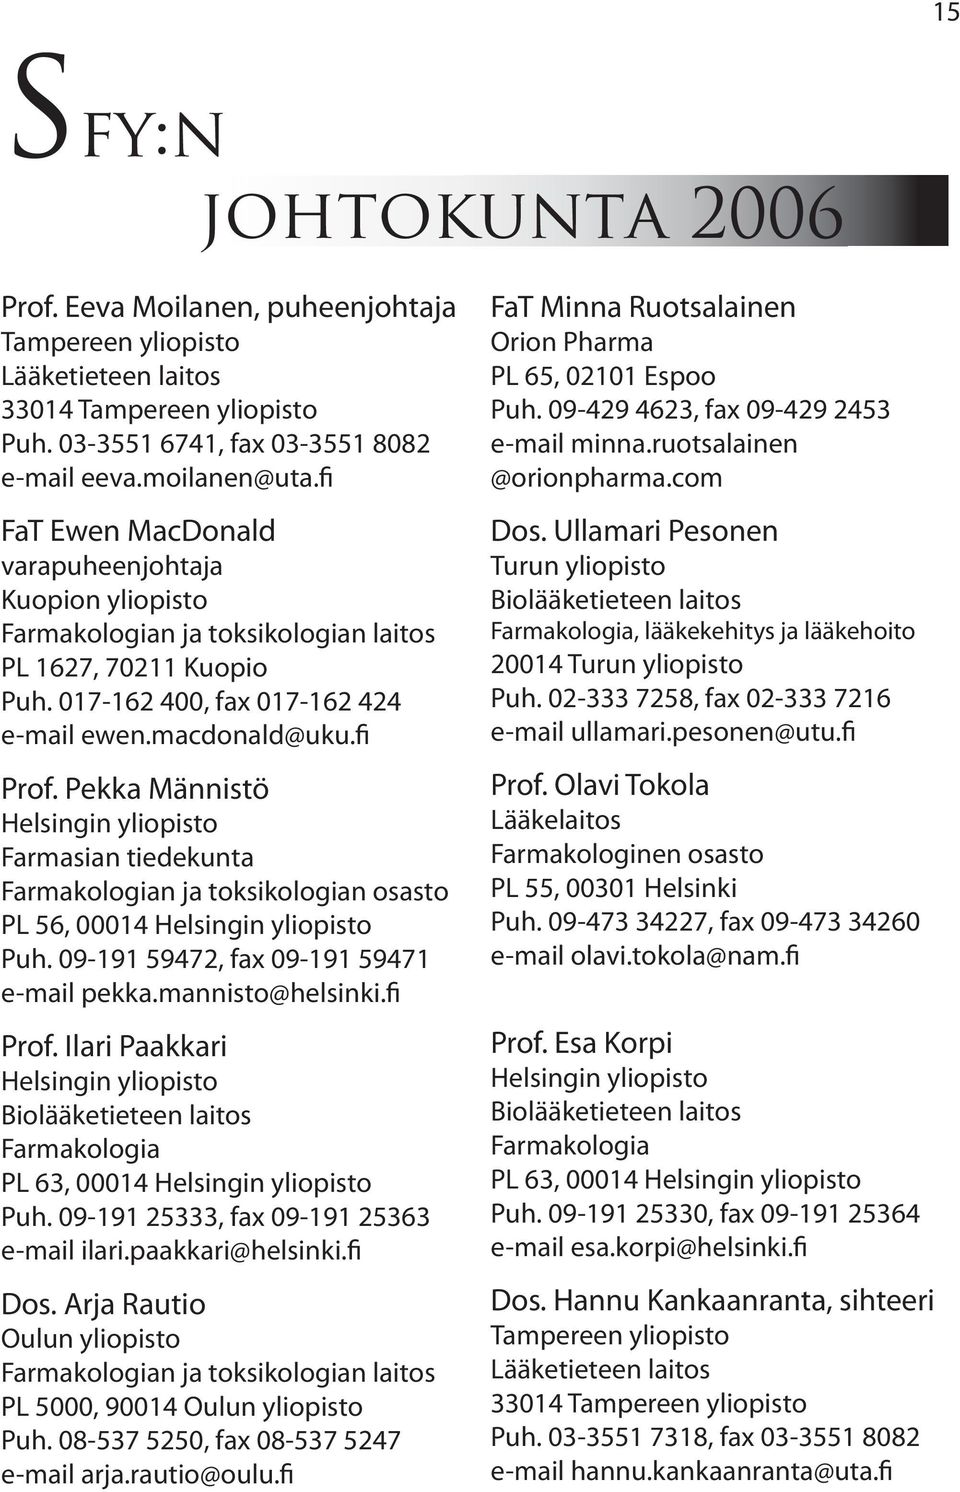 Pekka Männistö Helsingin yliopisto Farmasian tiedekunta Farmakologian ja toksikologian osasto PL 56, 00014 Helsingin yliopisto Puh. 09-191 59472, fax 09-191 59471 e-mail pekka.mannisto@helsinki.